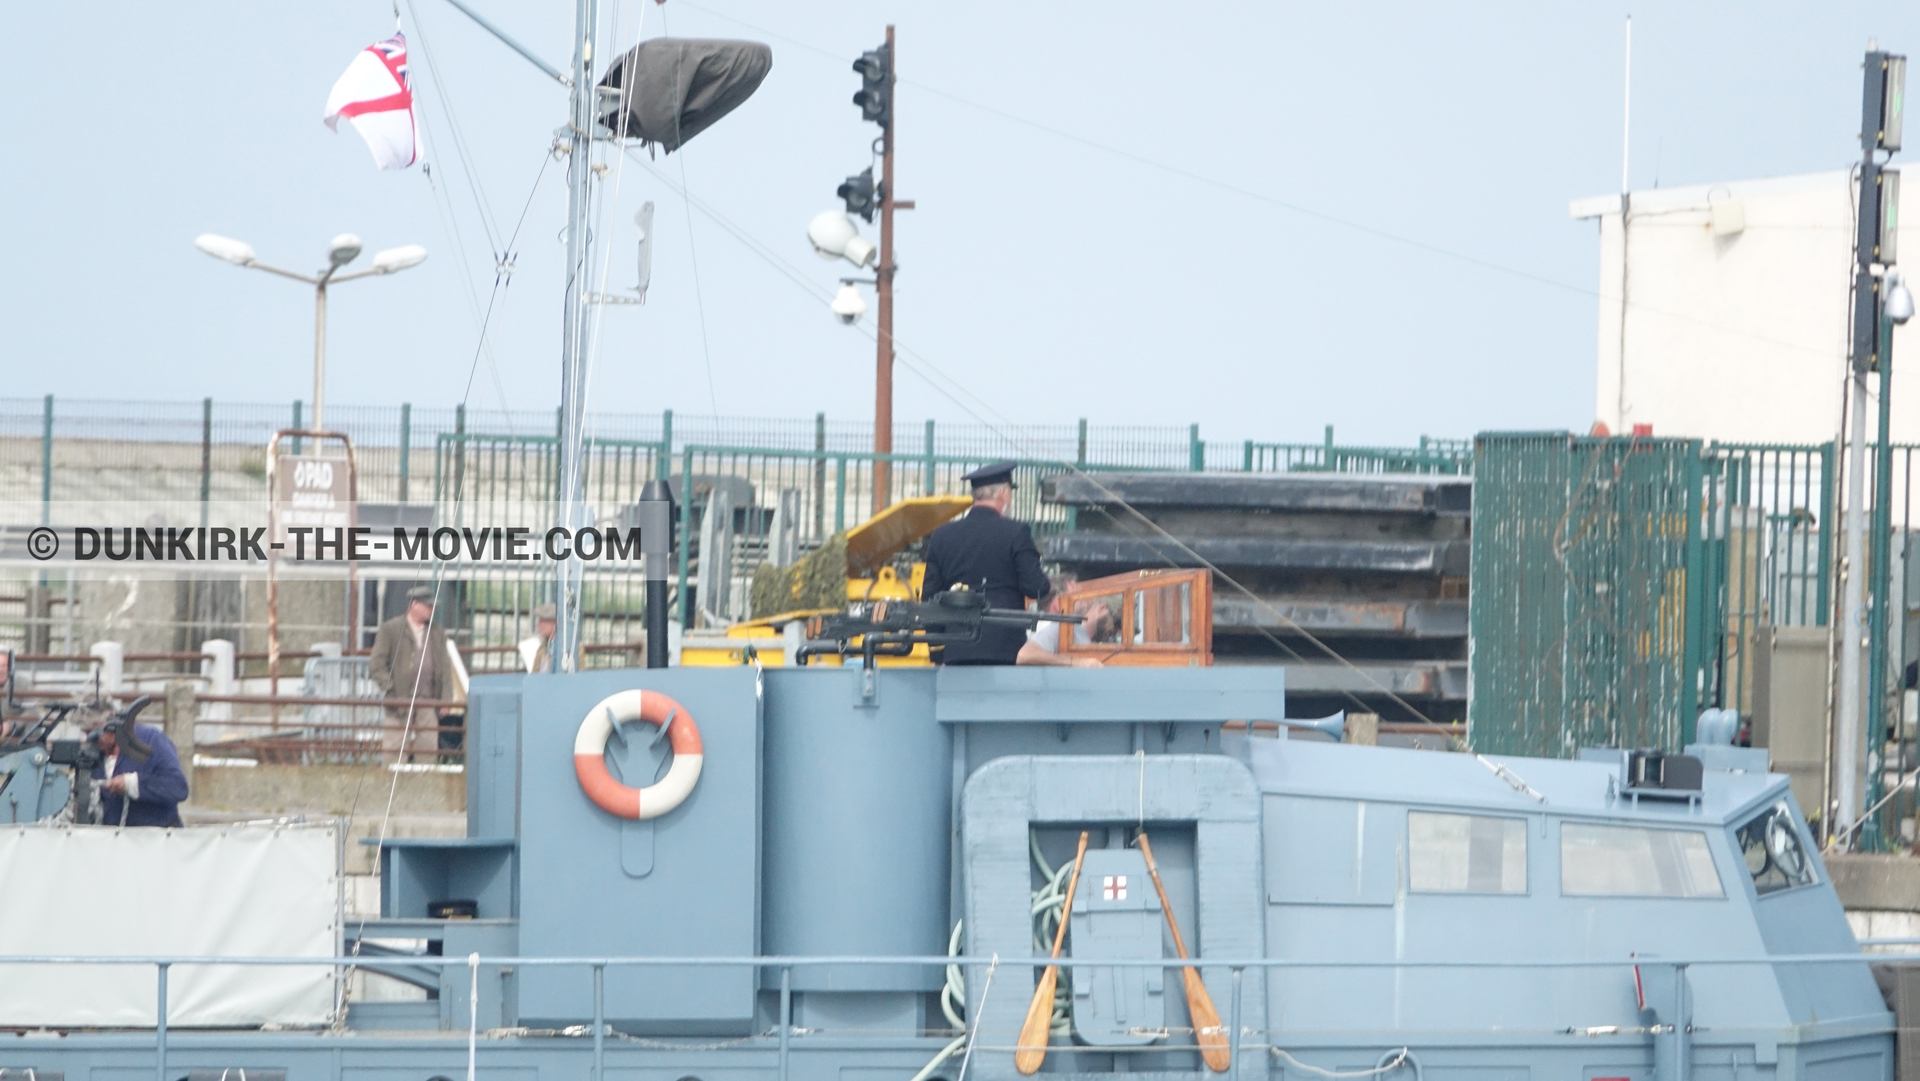 Fotos con HMS Medusa - ML1387, muelle del ESTE,  durante el rodaje de la película Dunkerque de Nolan